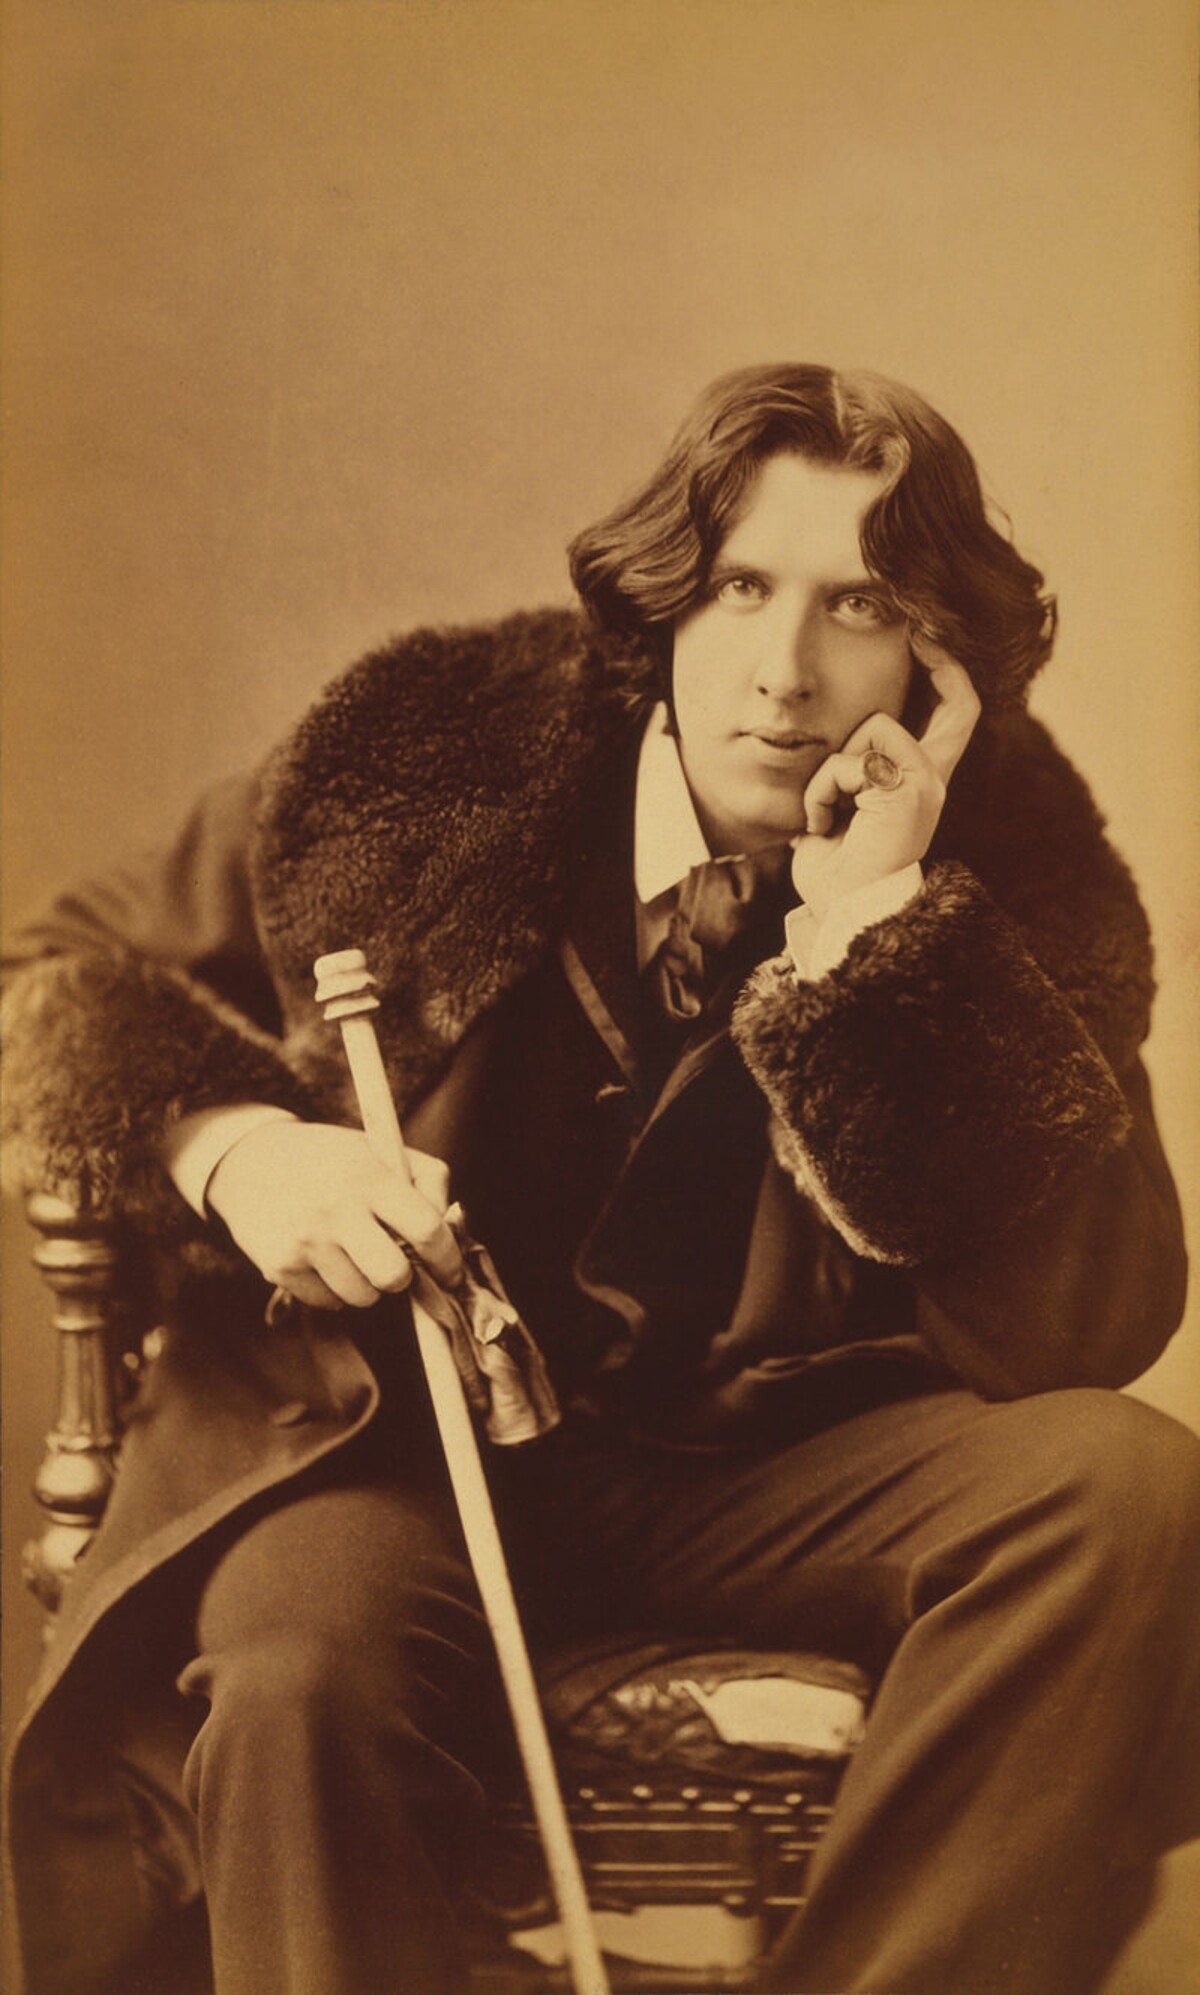 Za jednoho z dandies byl považován i spisovatel Oscar Wilde.